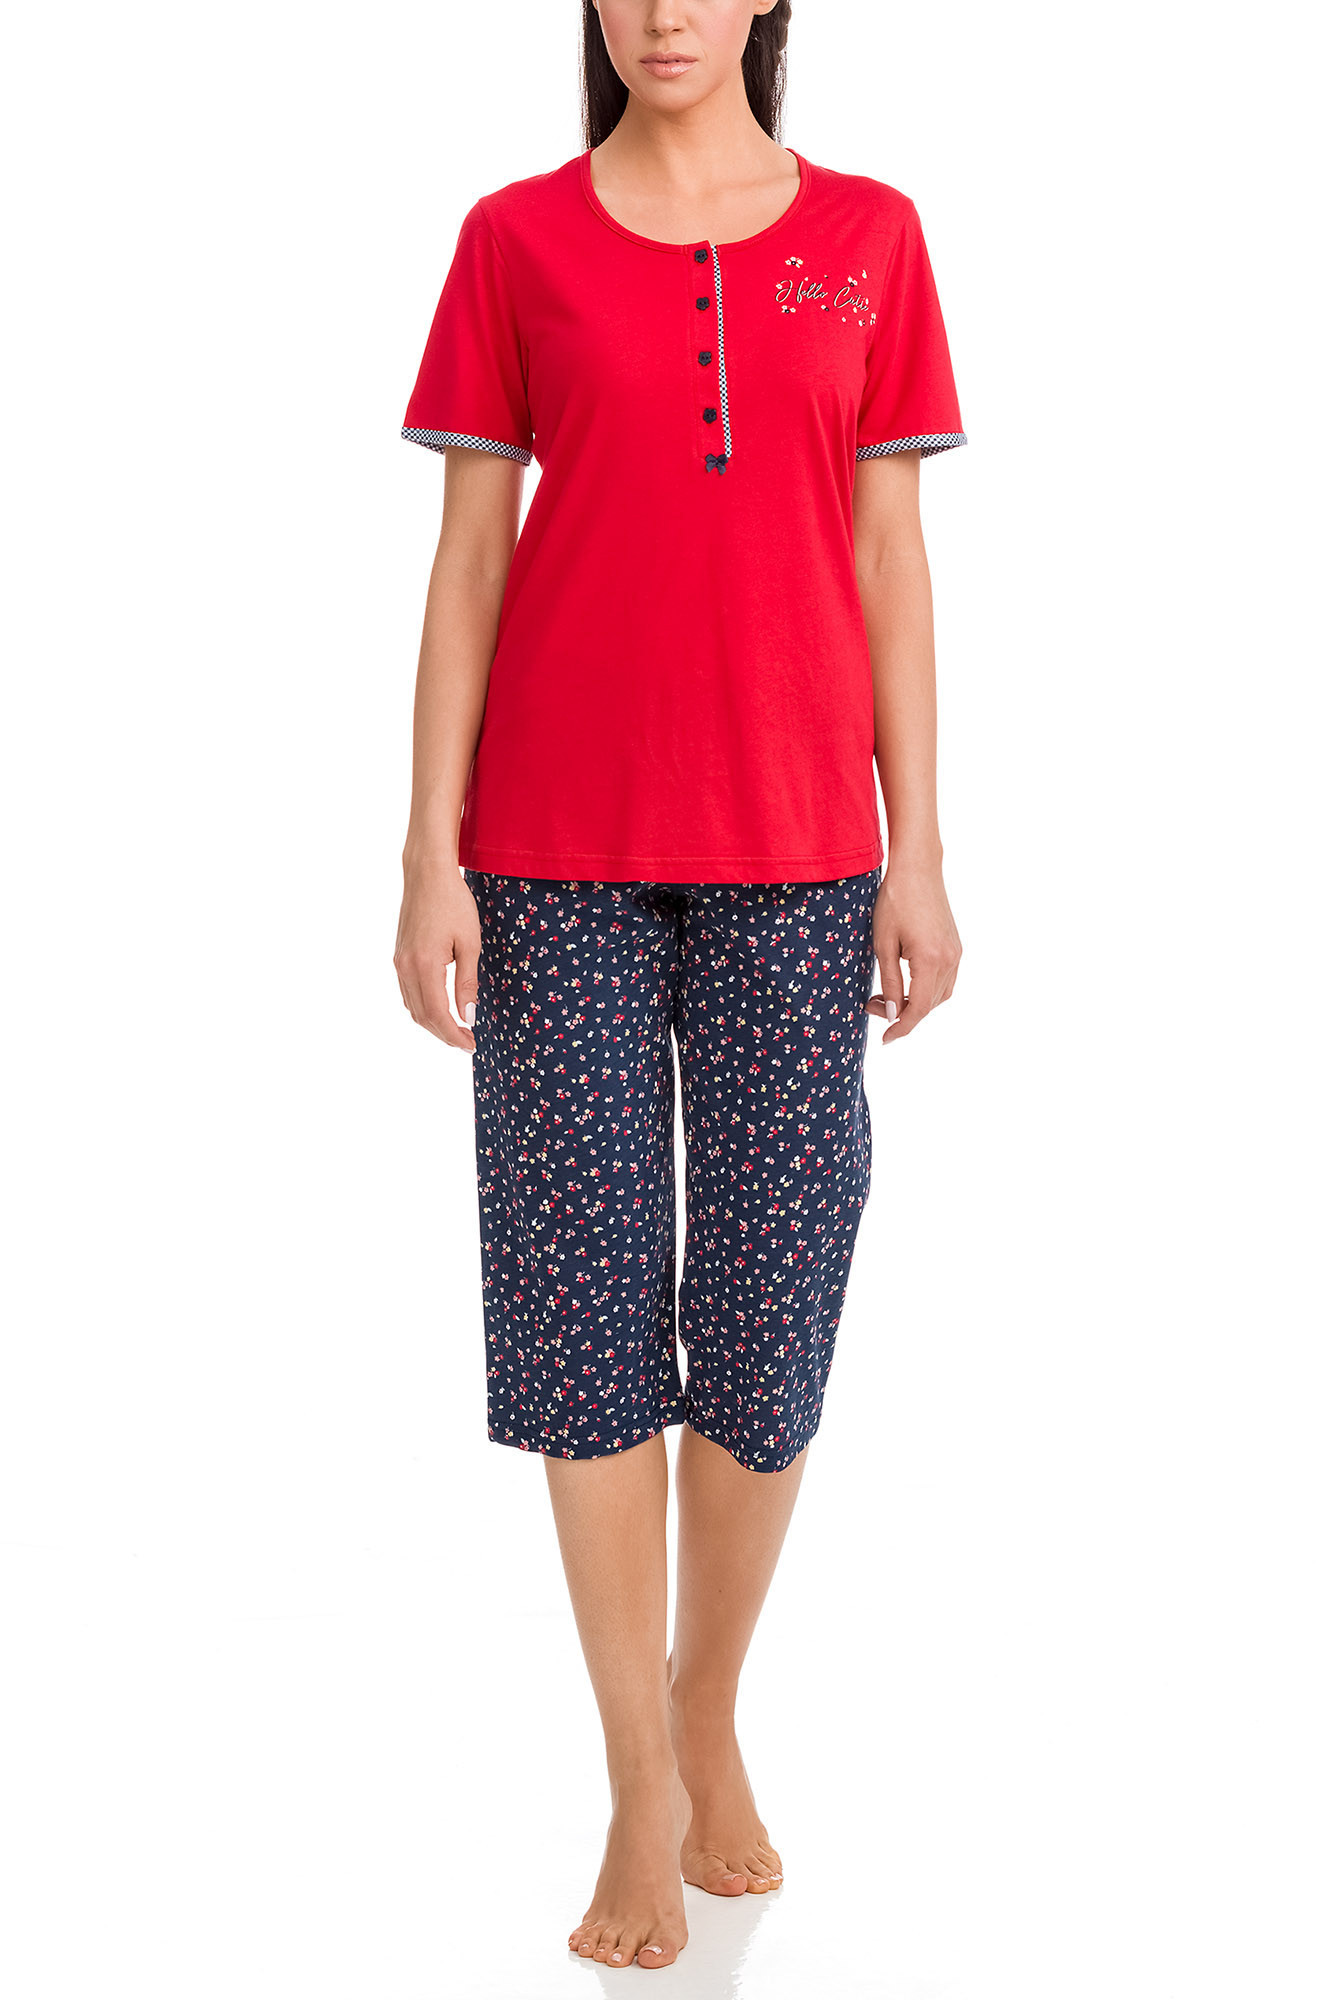 Dámské pyžamo RED S model 14783576 - Vamp